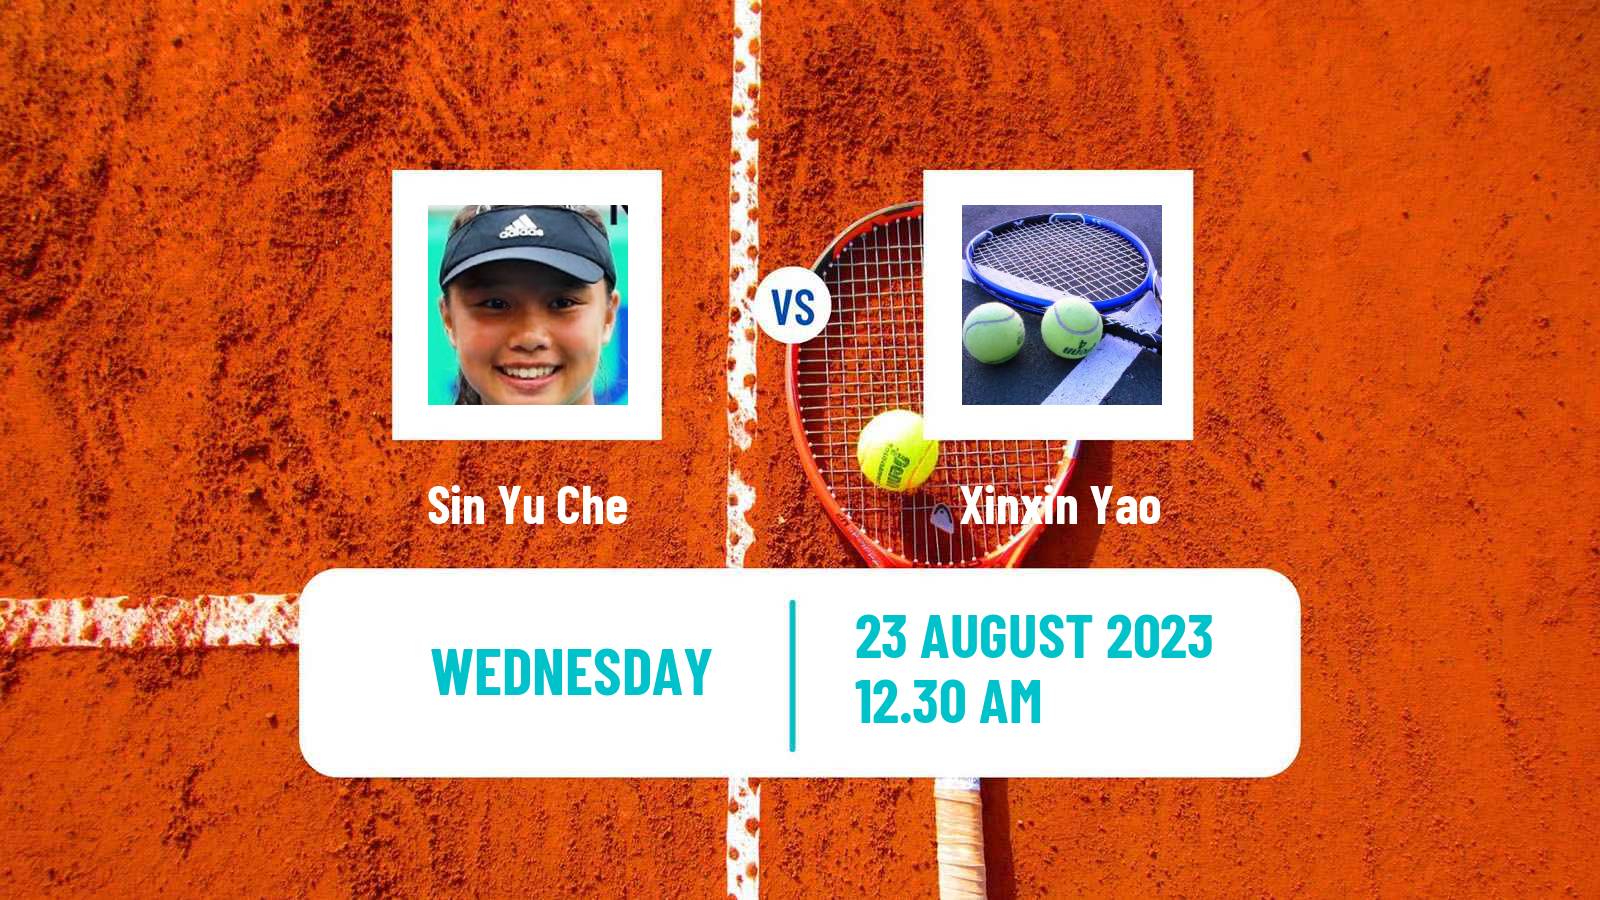 Tennis ITF W40 Hong Kong 2 Women Sin Yu Che - Xinxin Yao